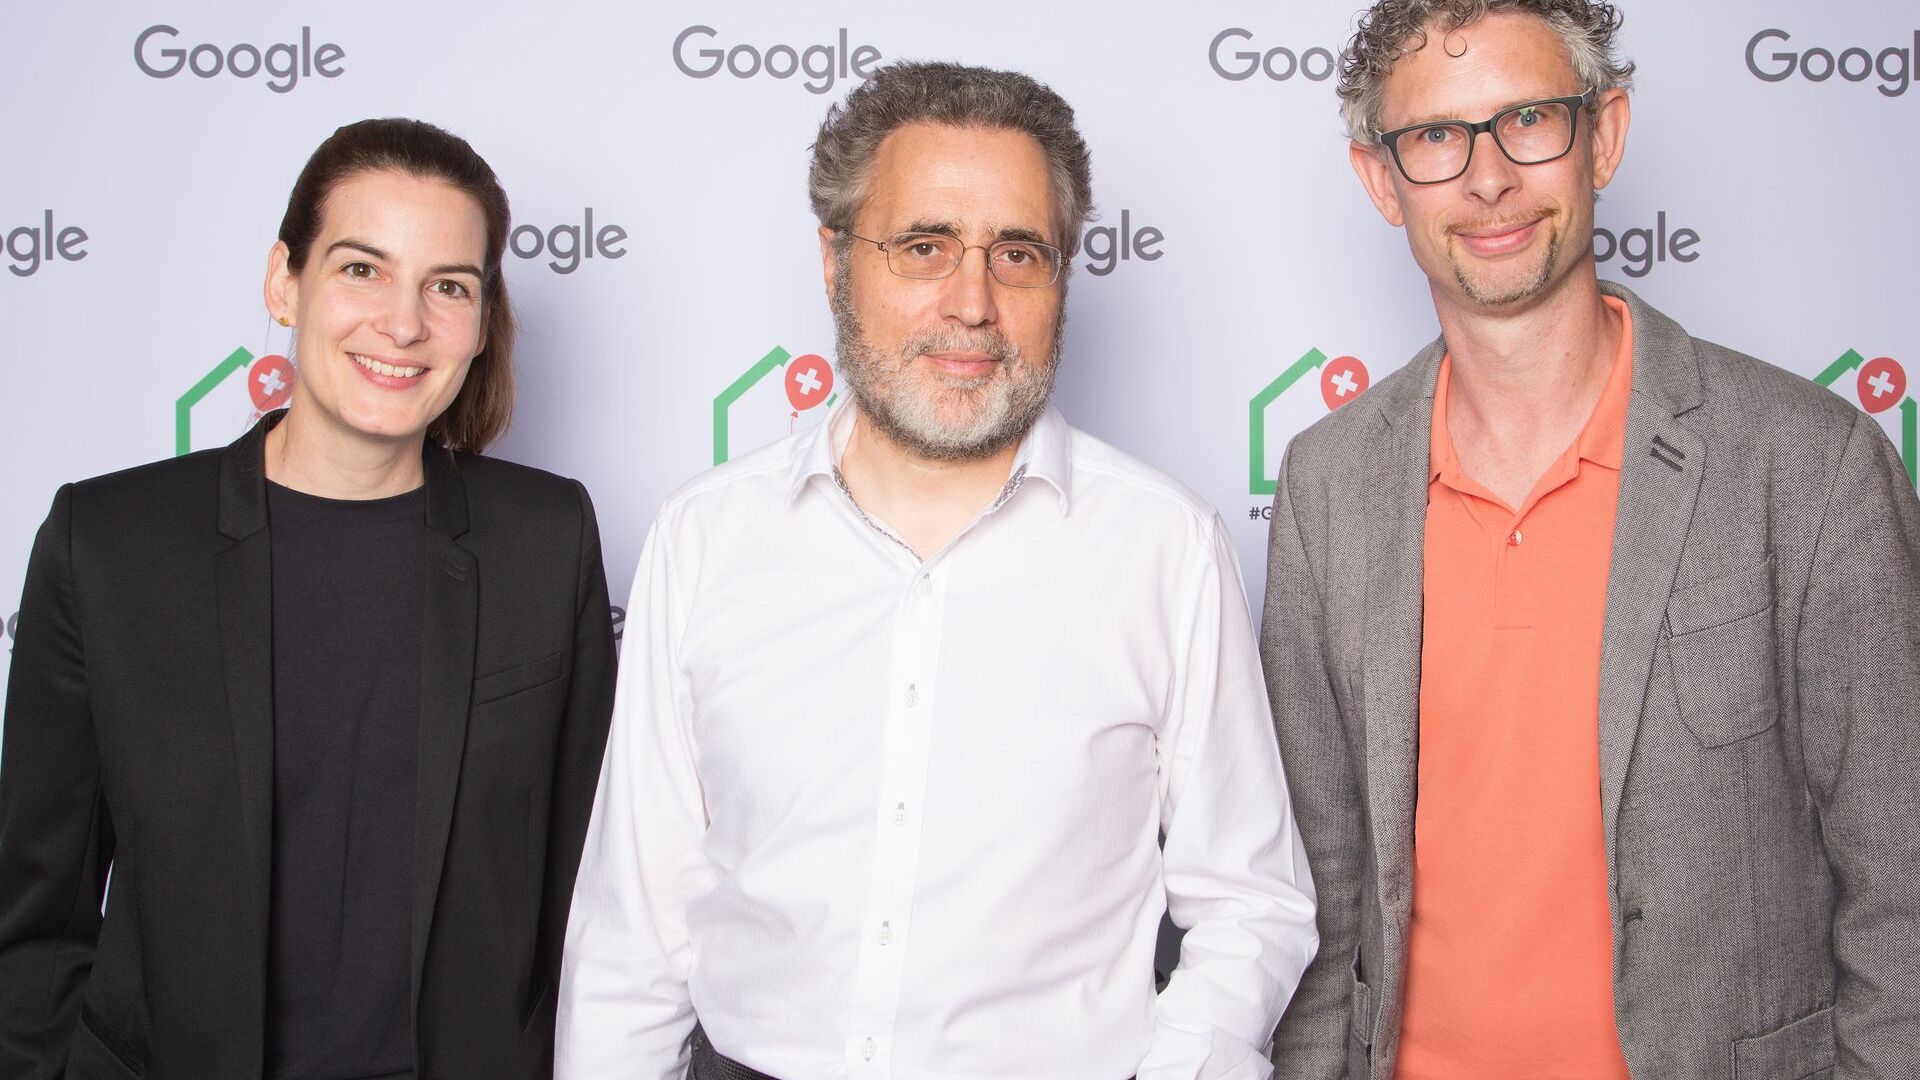 Урс Хельцле, старший віце-президент із технічної інфраструктури, та Піа де Карлі та Самуель Лейзер, медіа-команда Швейцарії, відвідали офіційне відкриття нового Campus Europaallee Google у Цюріху 27 червня 2022 року.